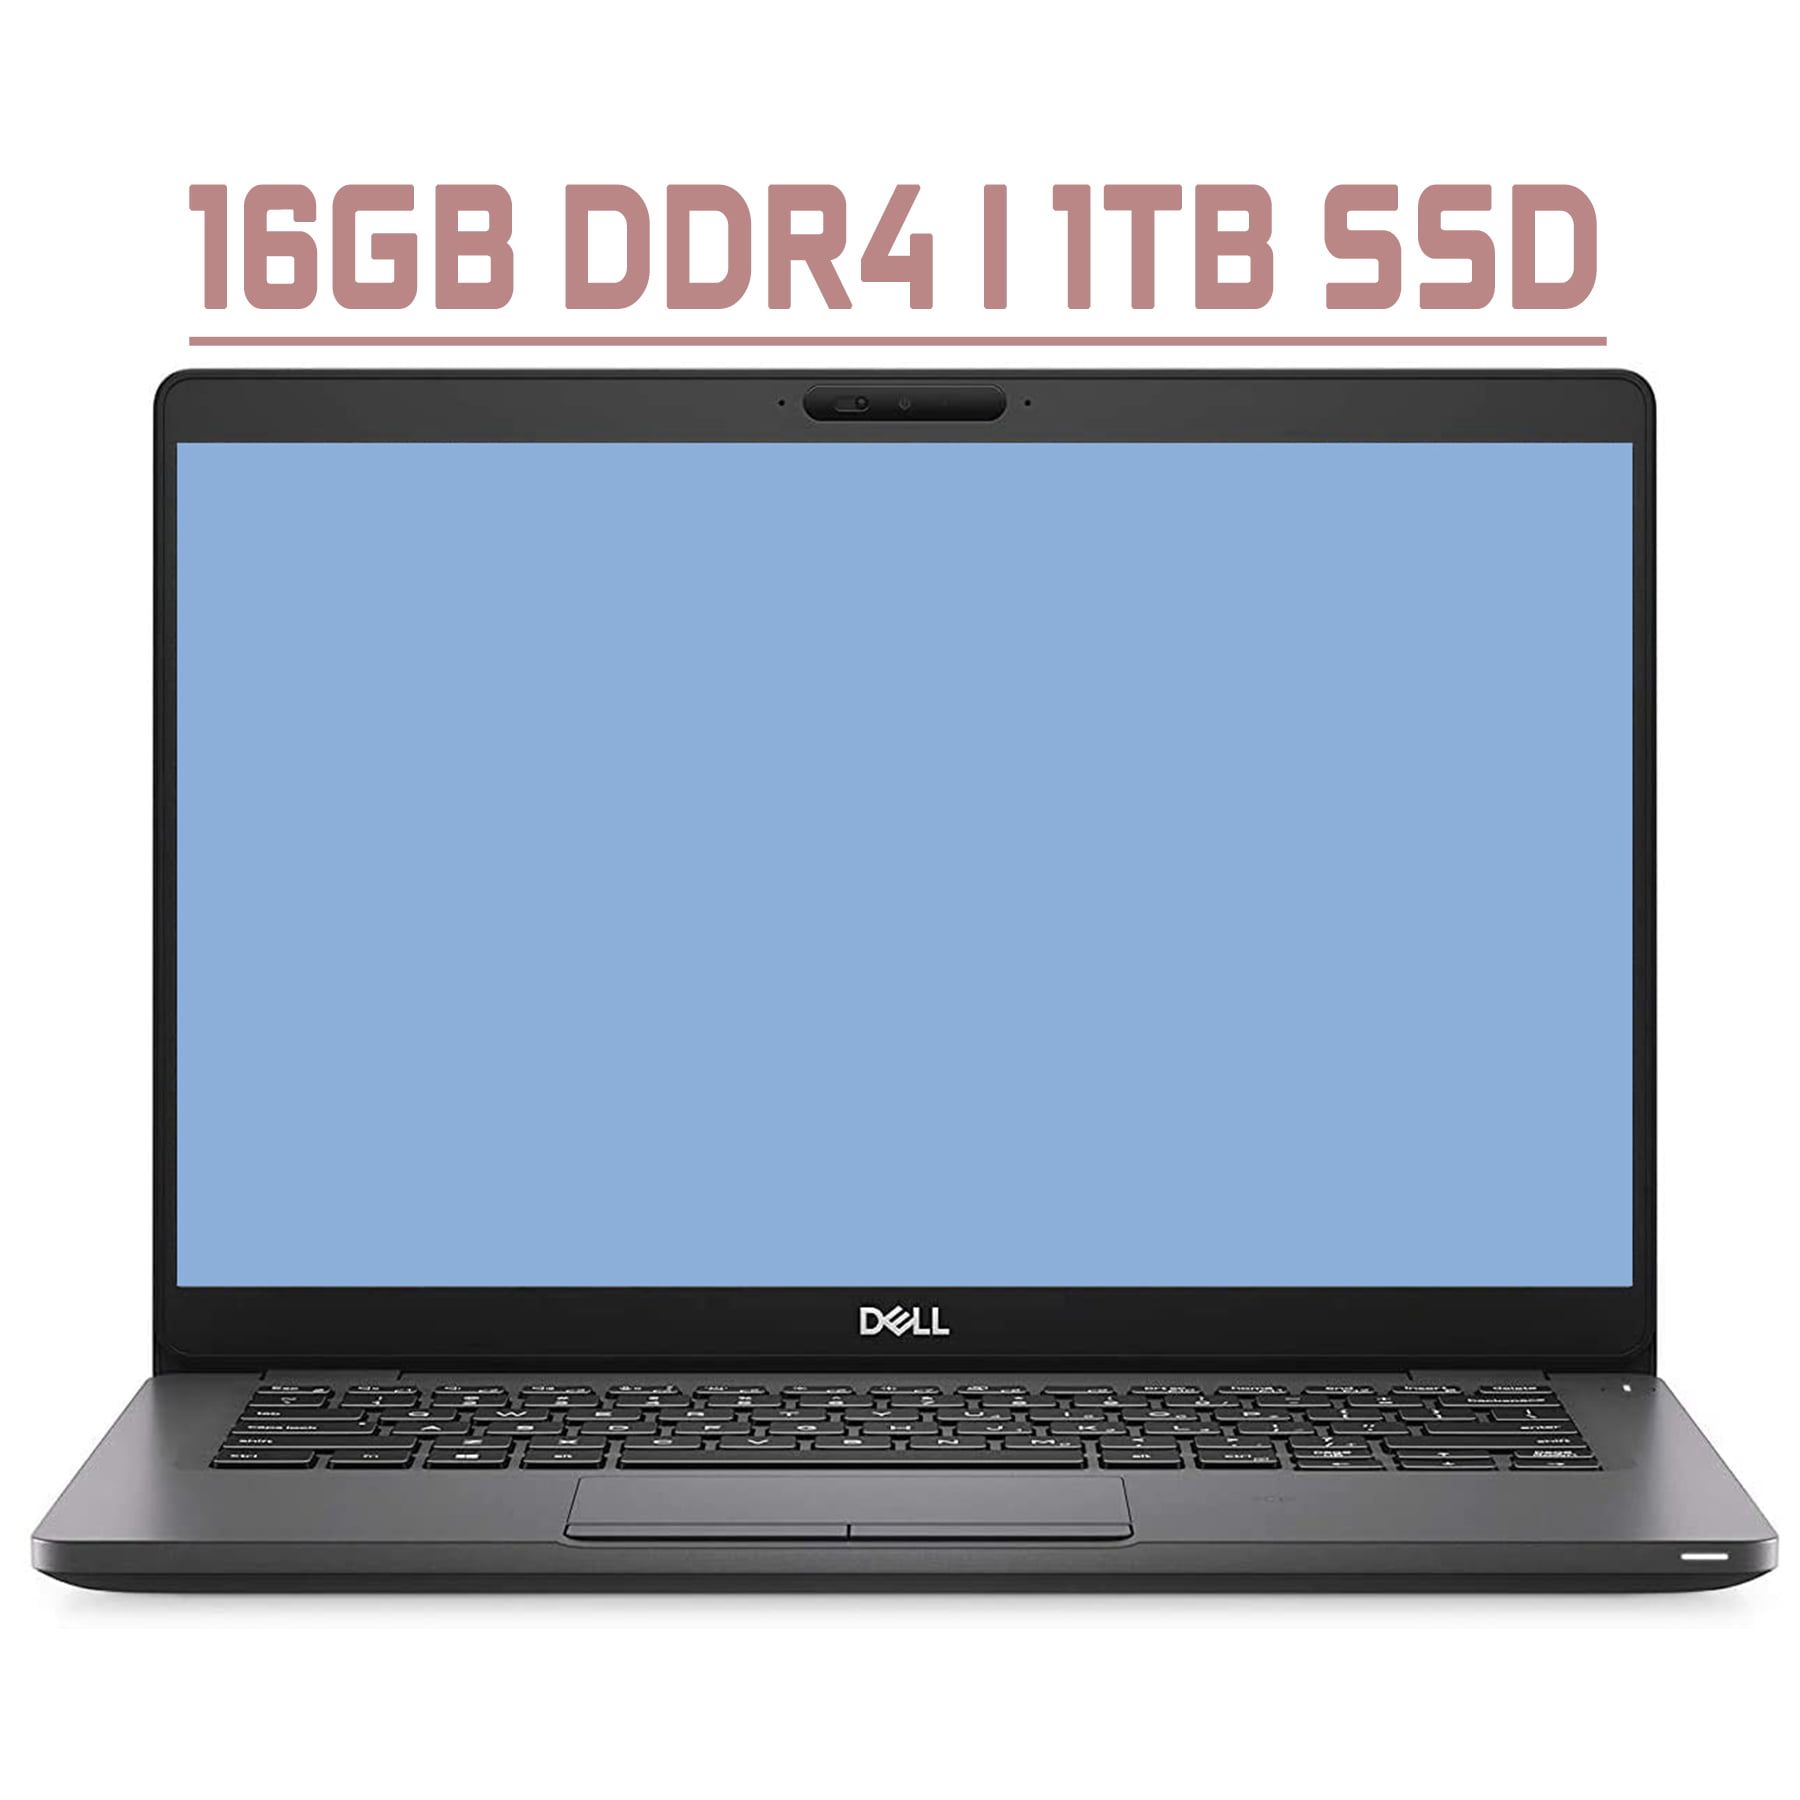 Dell Latitude 5300 Premium Business Laptop 13.3” FHD Display 8th Gen Intel  4-Core i7-8665U 16GB DDR4 1TB SSD Backlit Keyboard USB-C HDMI Wifi Win10